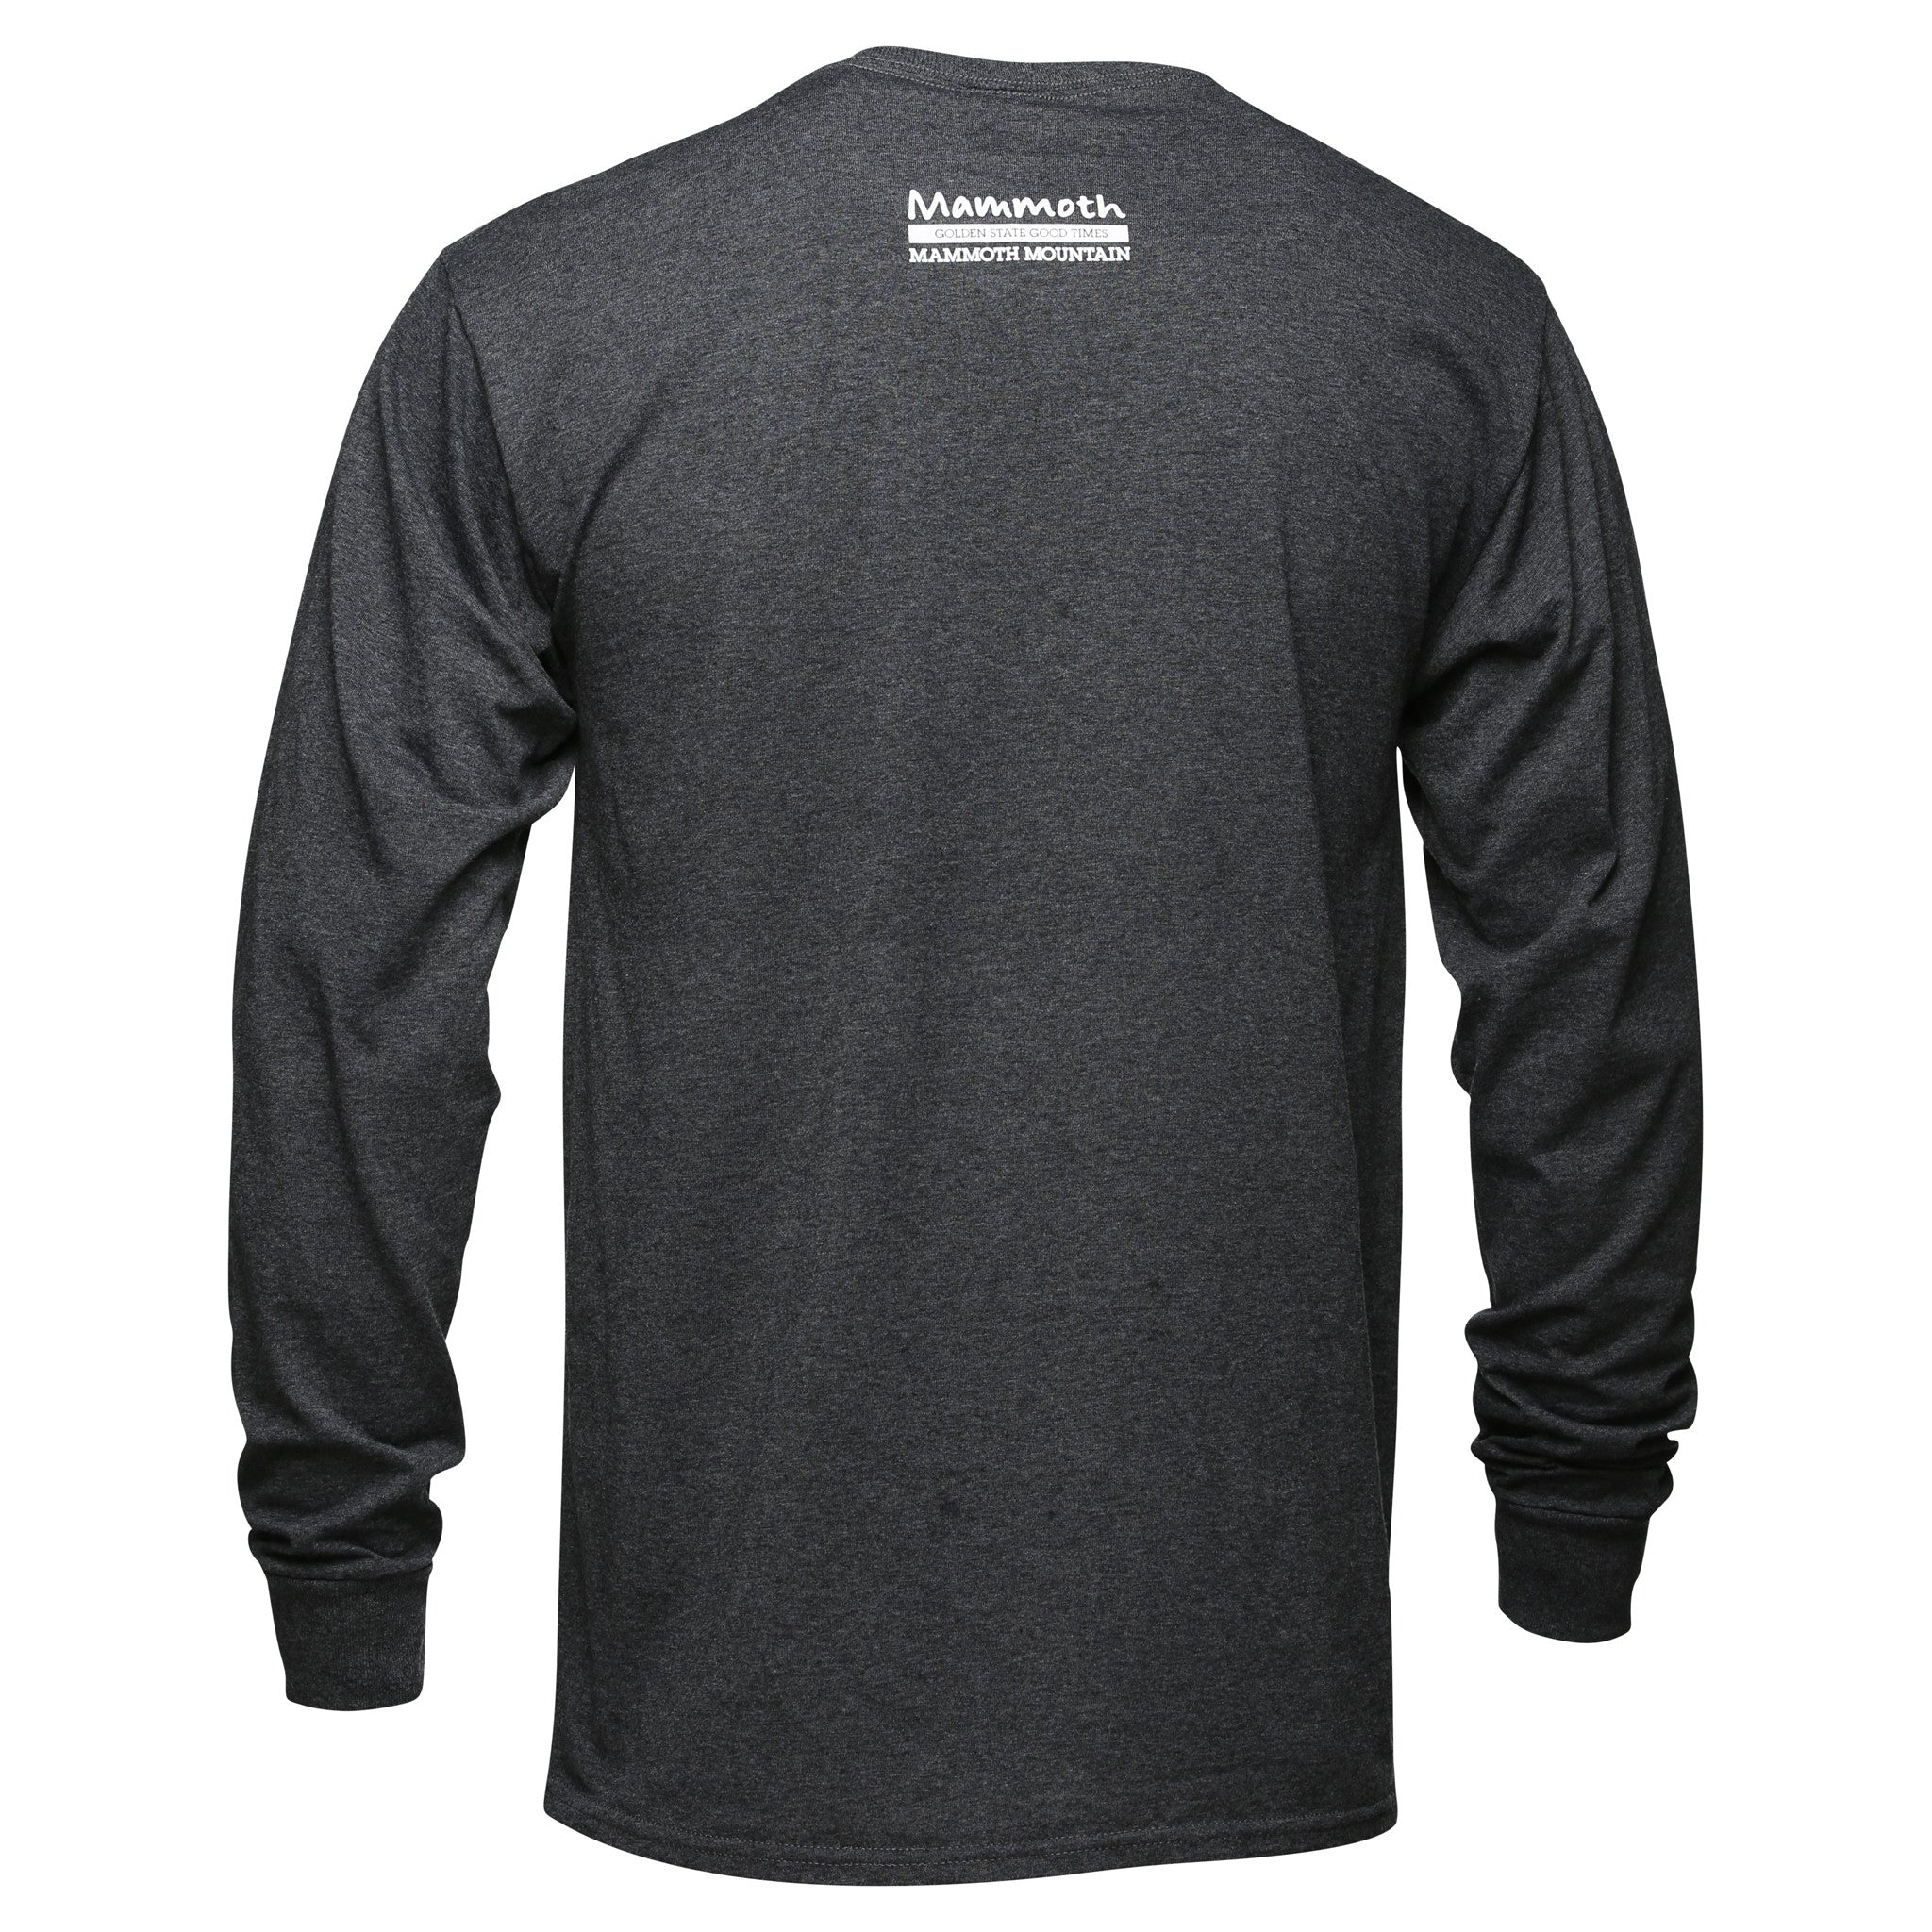 Adult T-Shirt - Clay – BourbonvilleUSA